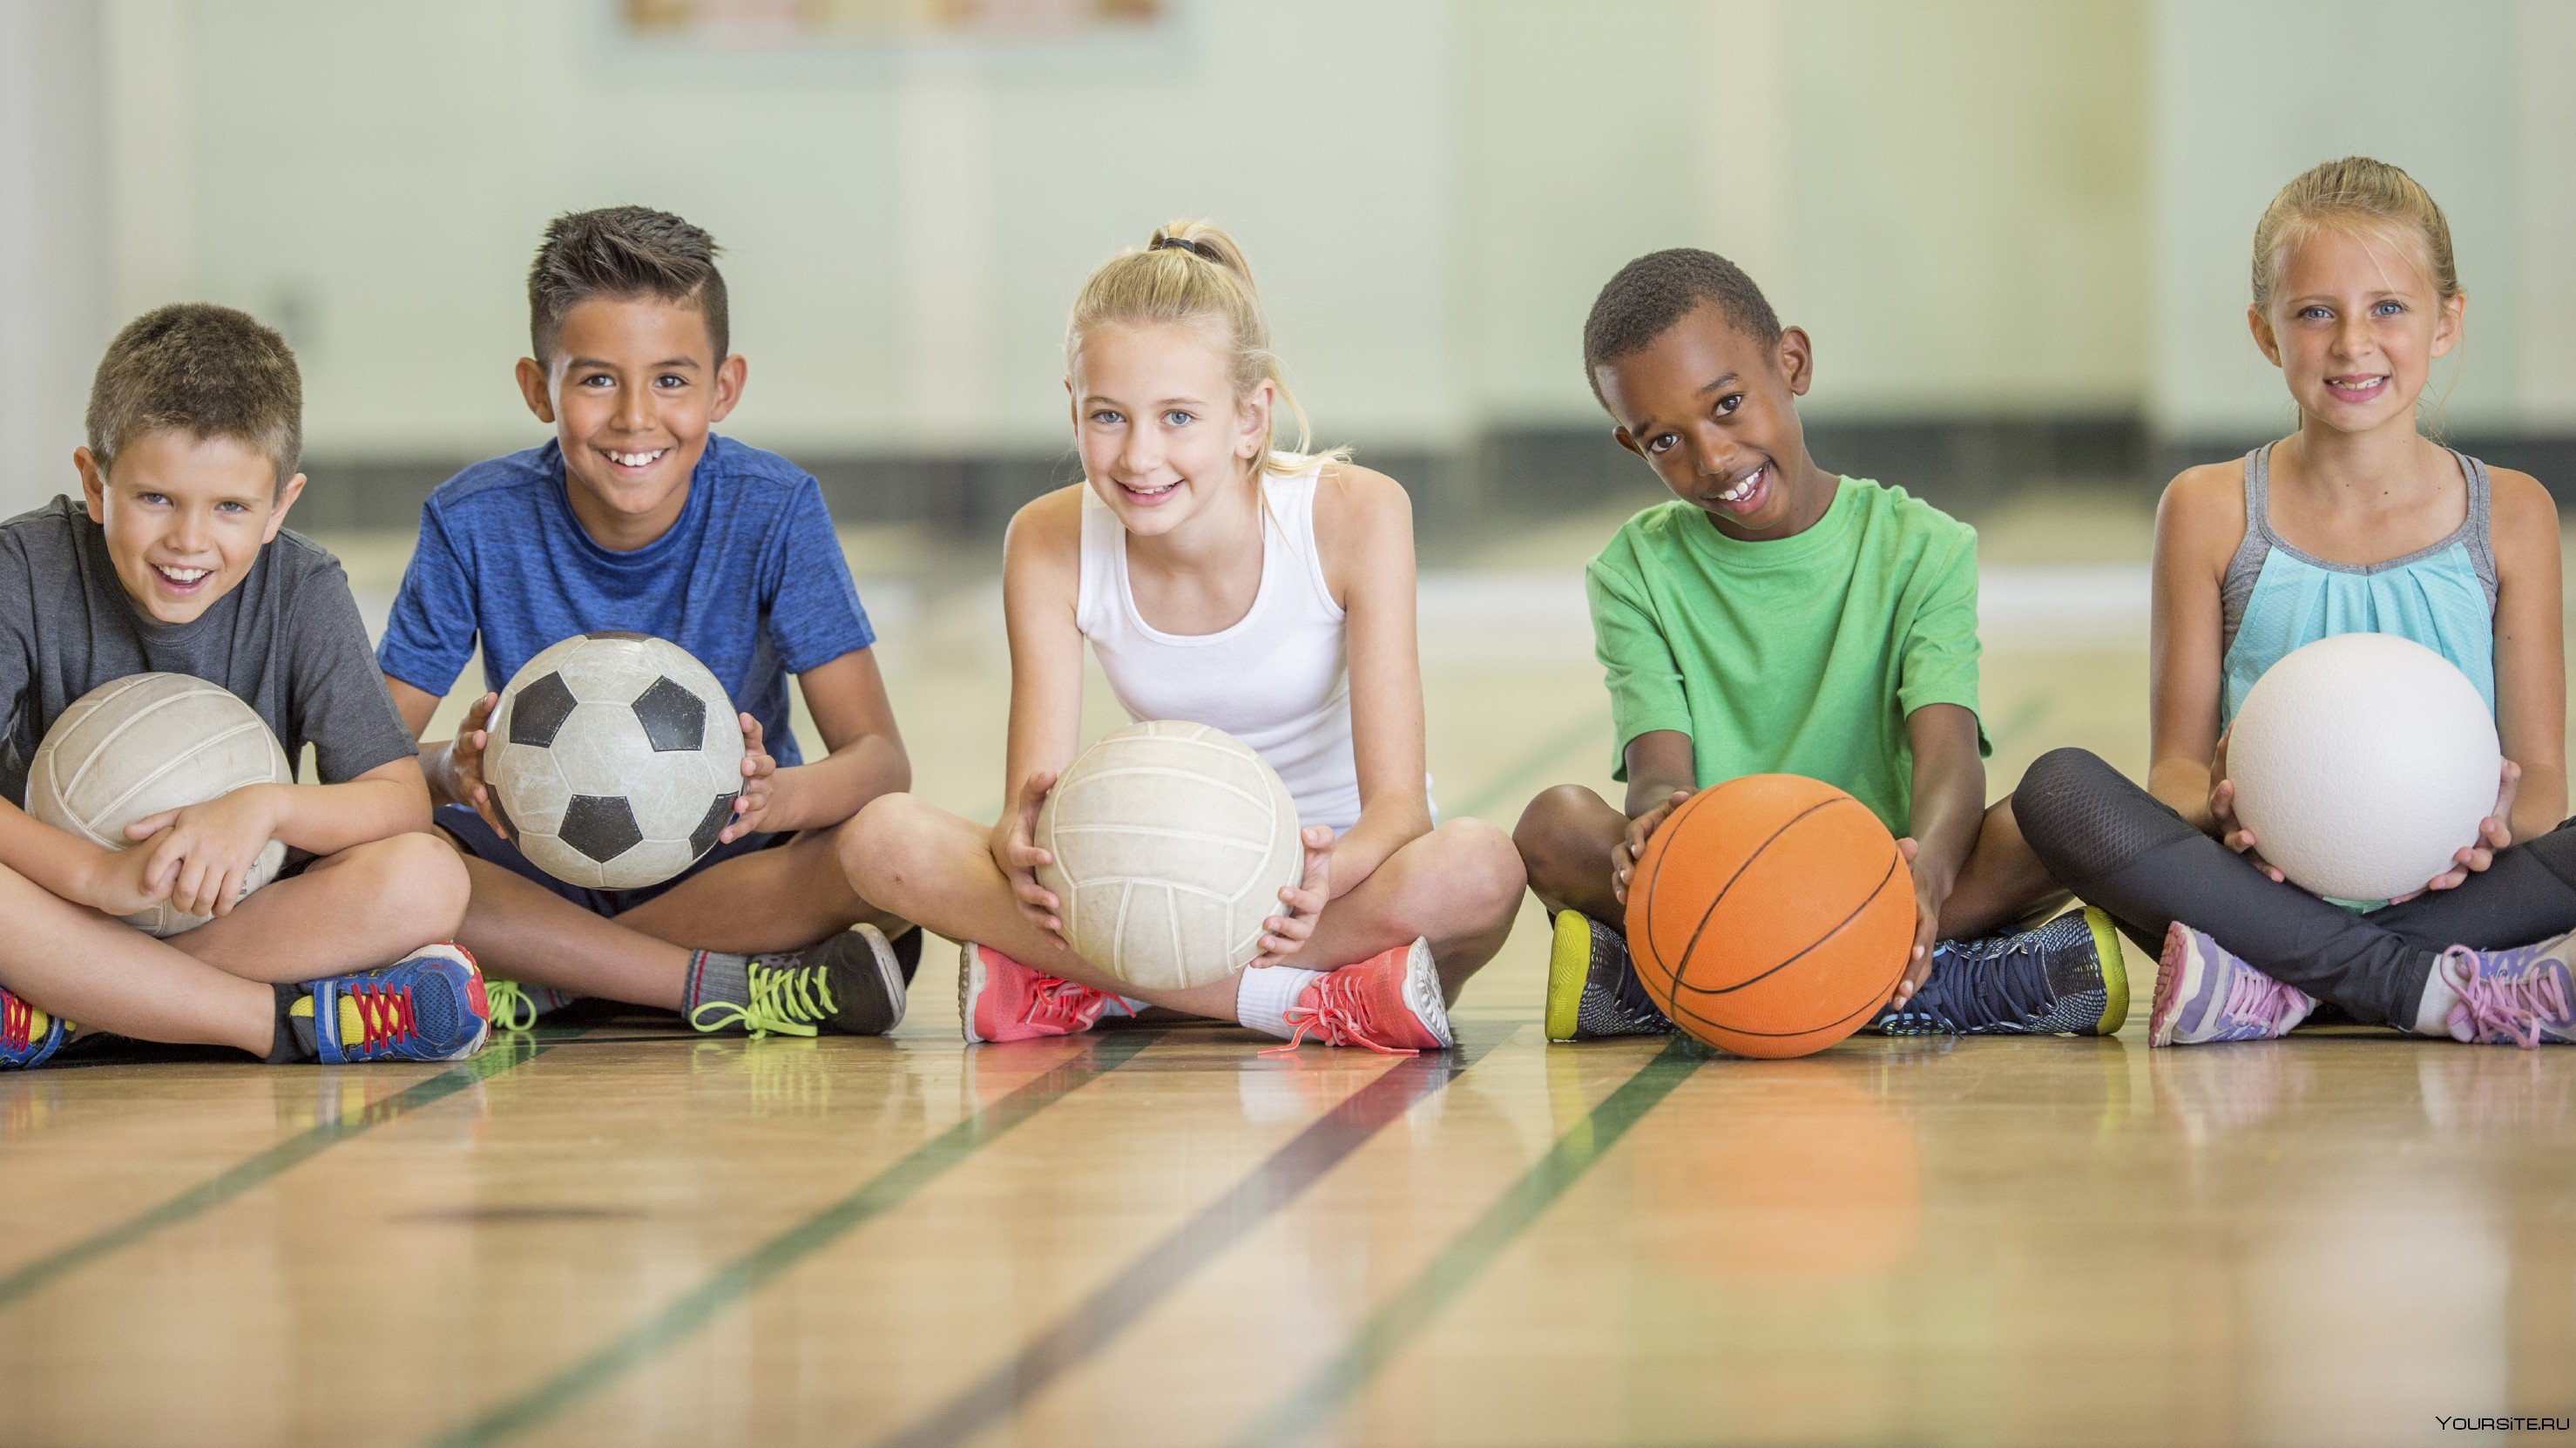 Do you enjoy playing sports. Физическая культура. Детский спорт. Спортивные дети. Занятие спортом дети.